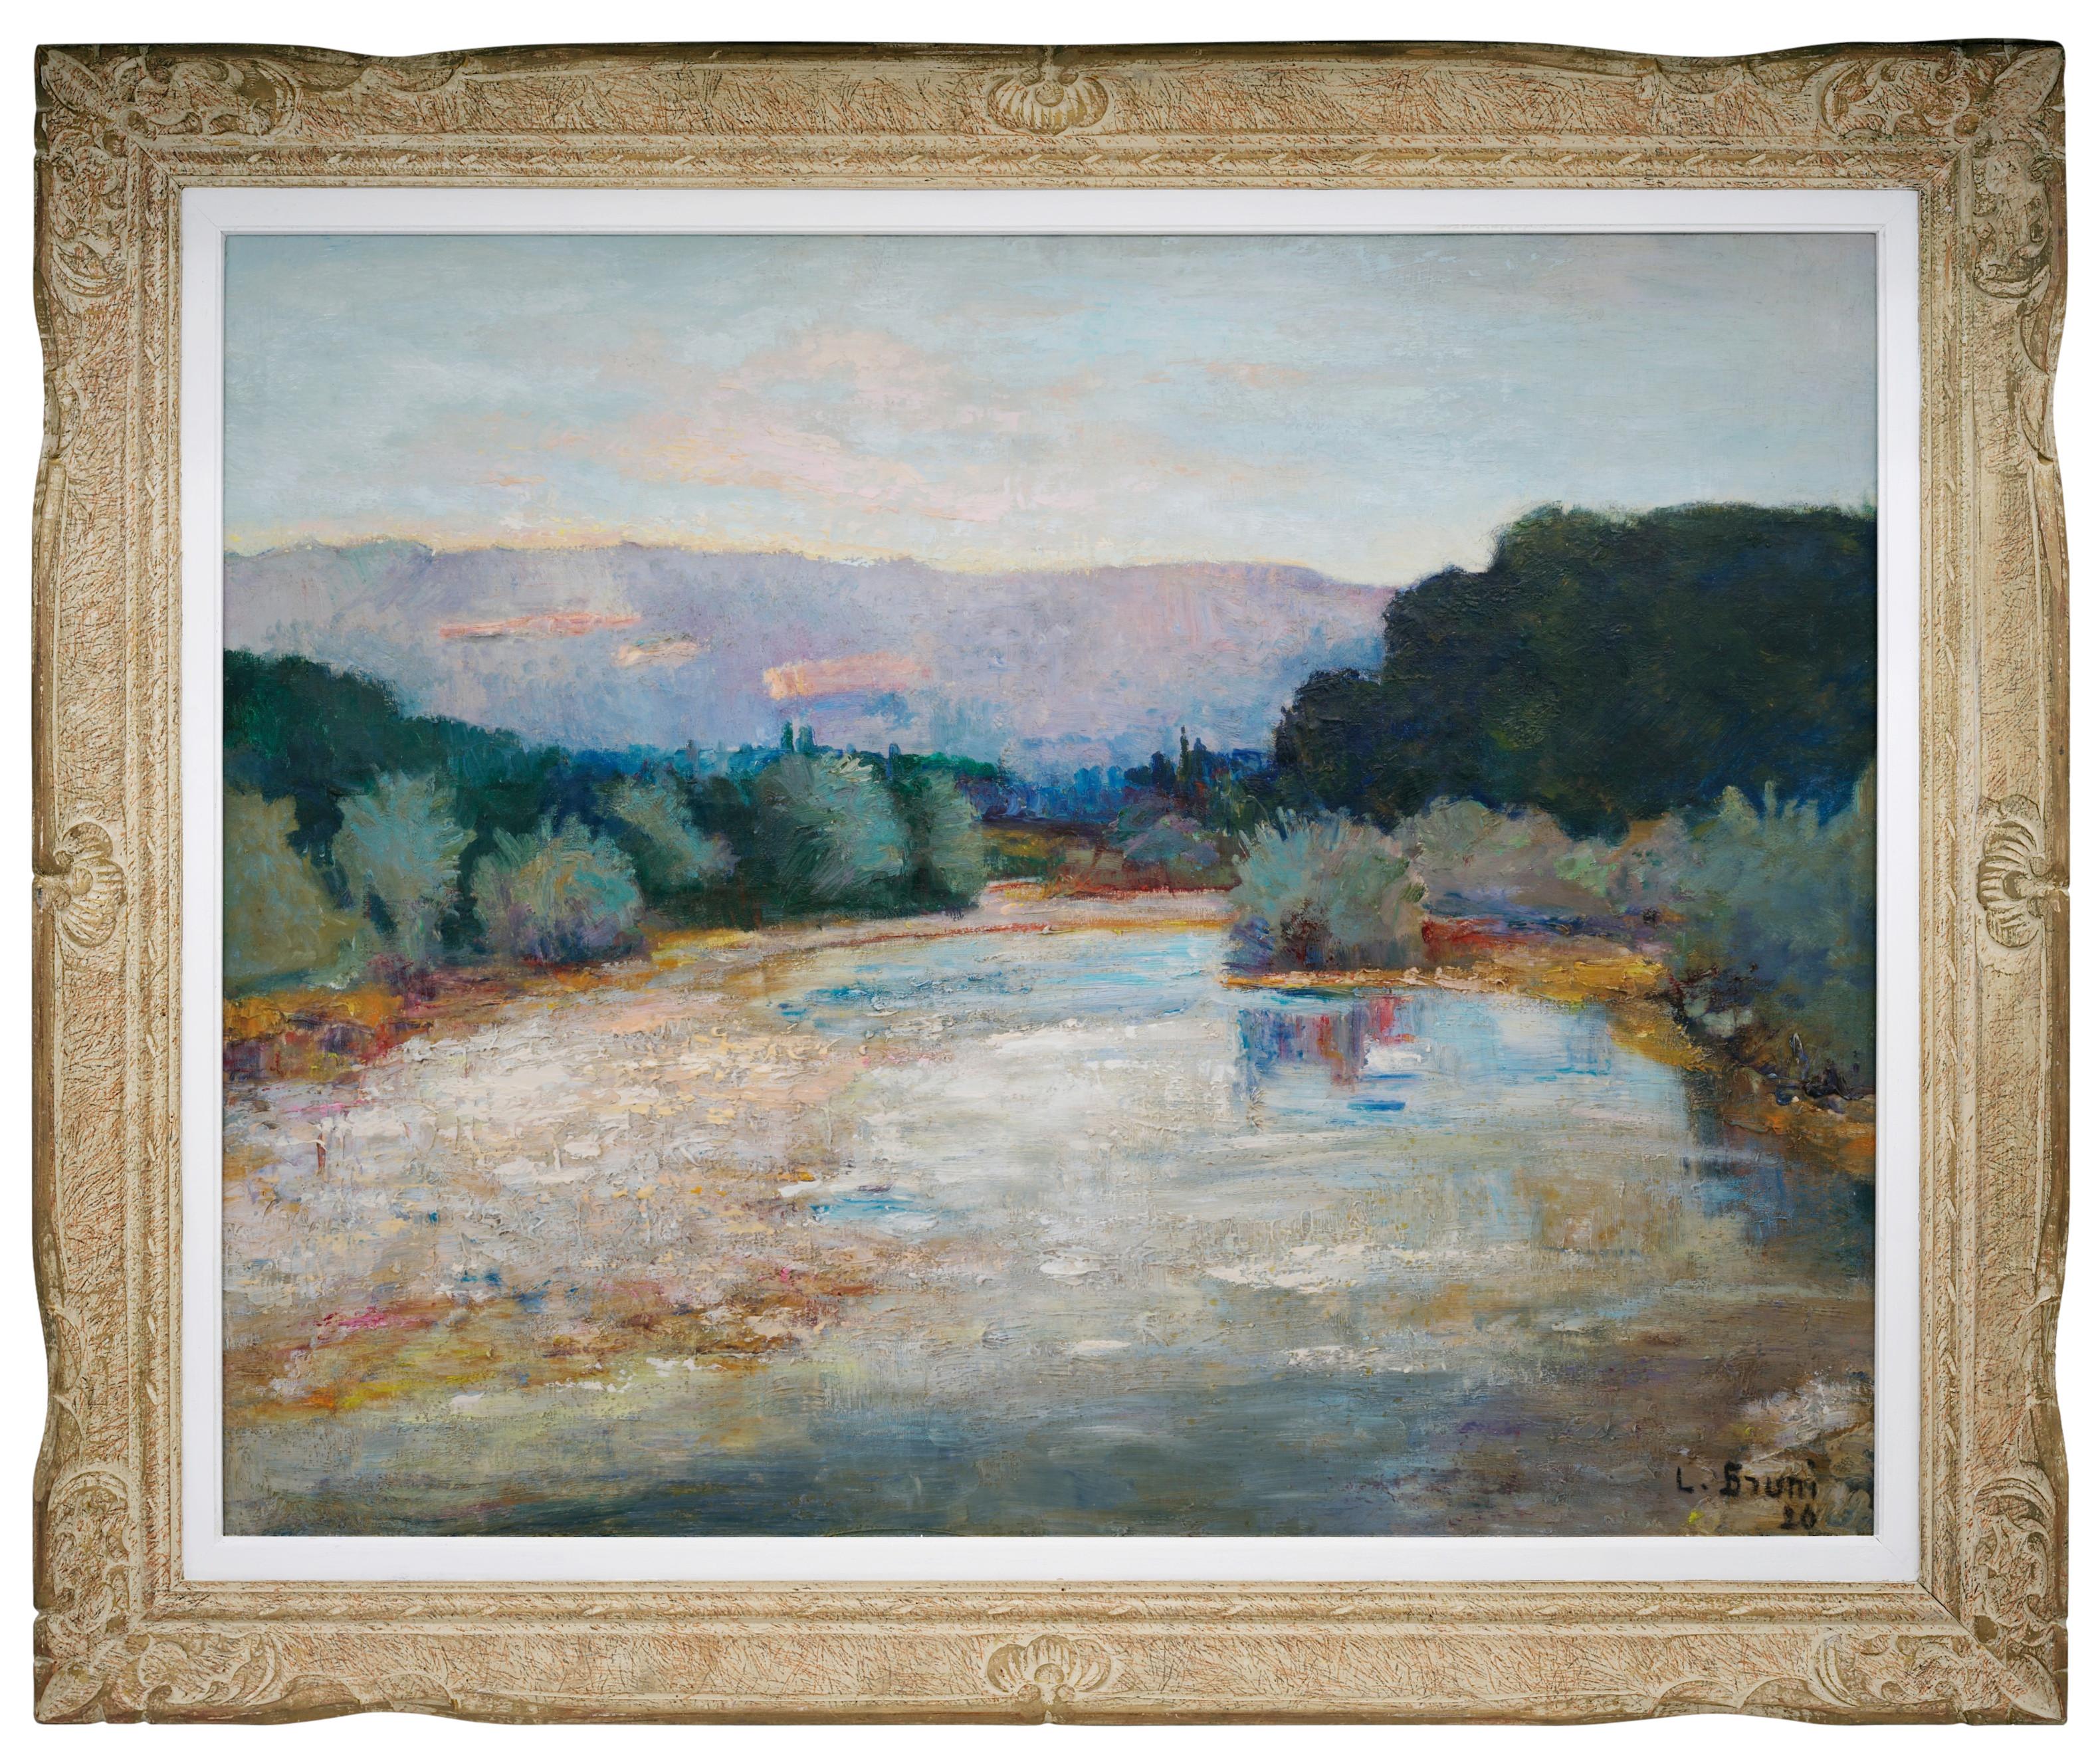 Laure Stella Bruni Landscape Painting - Laure Bruni, Oil on canvas, "Landscape of Drôme", 1926